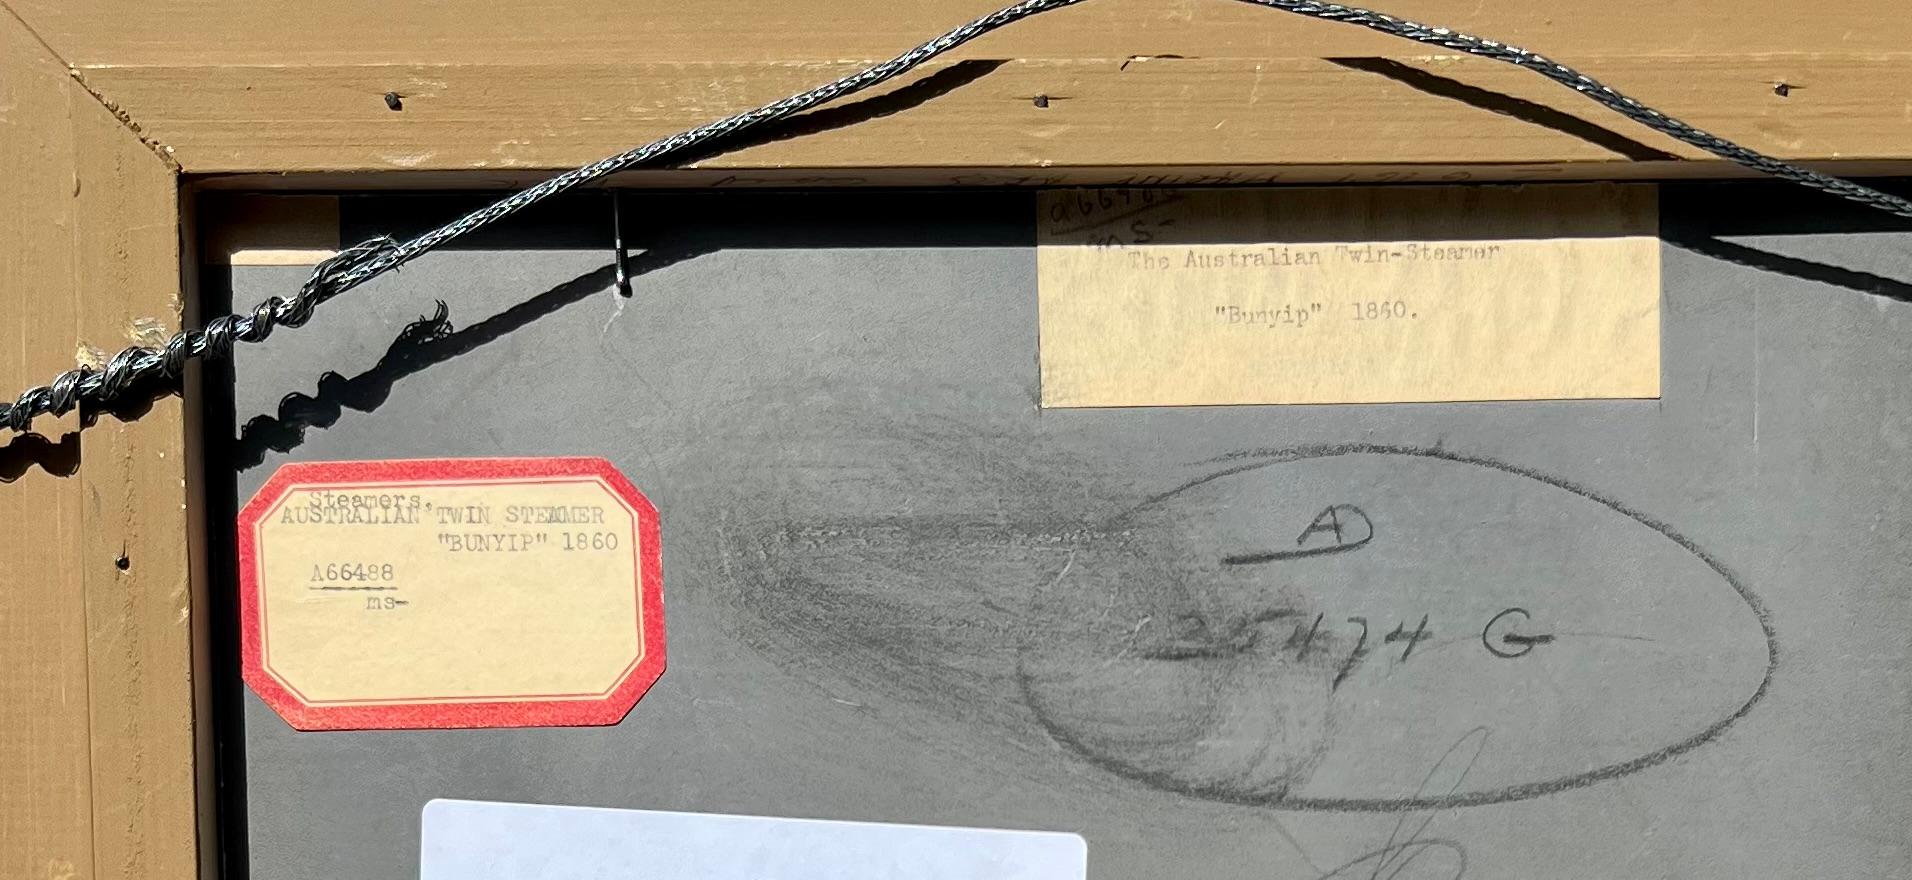 Öl auf Malerkarton, 19. Jahrhundert. Keine Signatur gefunden, aber von einer talentierten Hand mit einer schönen leuchtenden Qualität gemacht. Label auf der Rückseite Der australische Zwillingsdampfer 'Bunyip', 1860.   Der Bunyip ist eine Kreatur